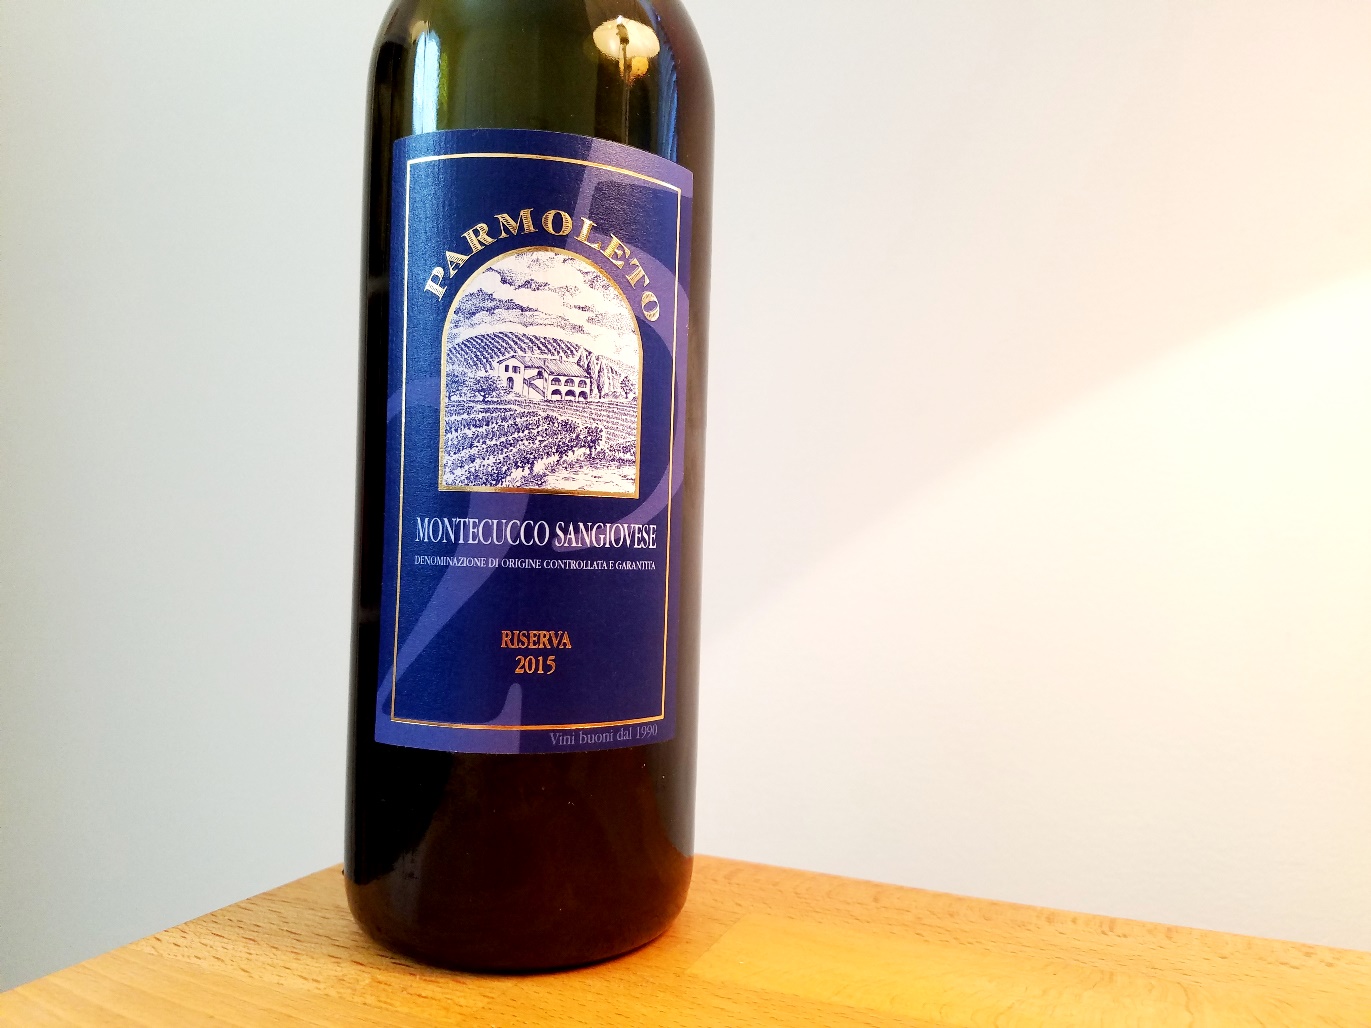 Parmoleto, Montecucco Sangiovese Riserva DOCG 2015, Tuscany, Italy, Wine Casual